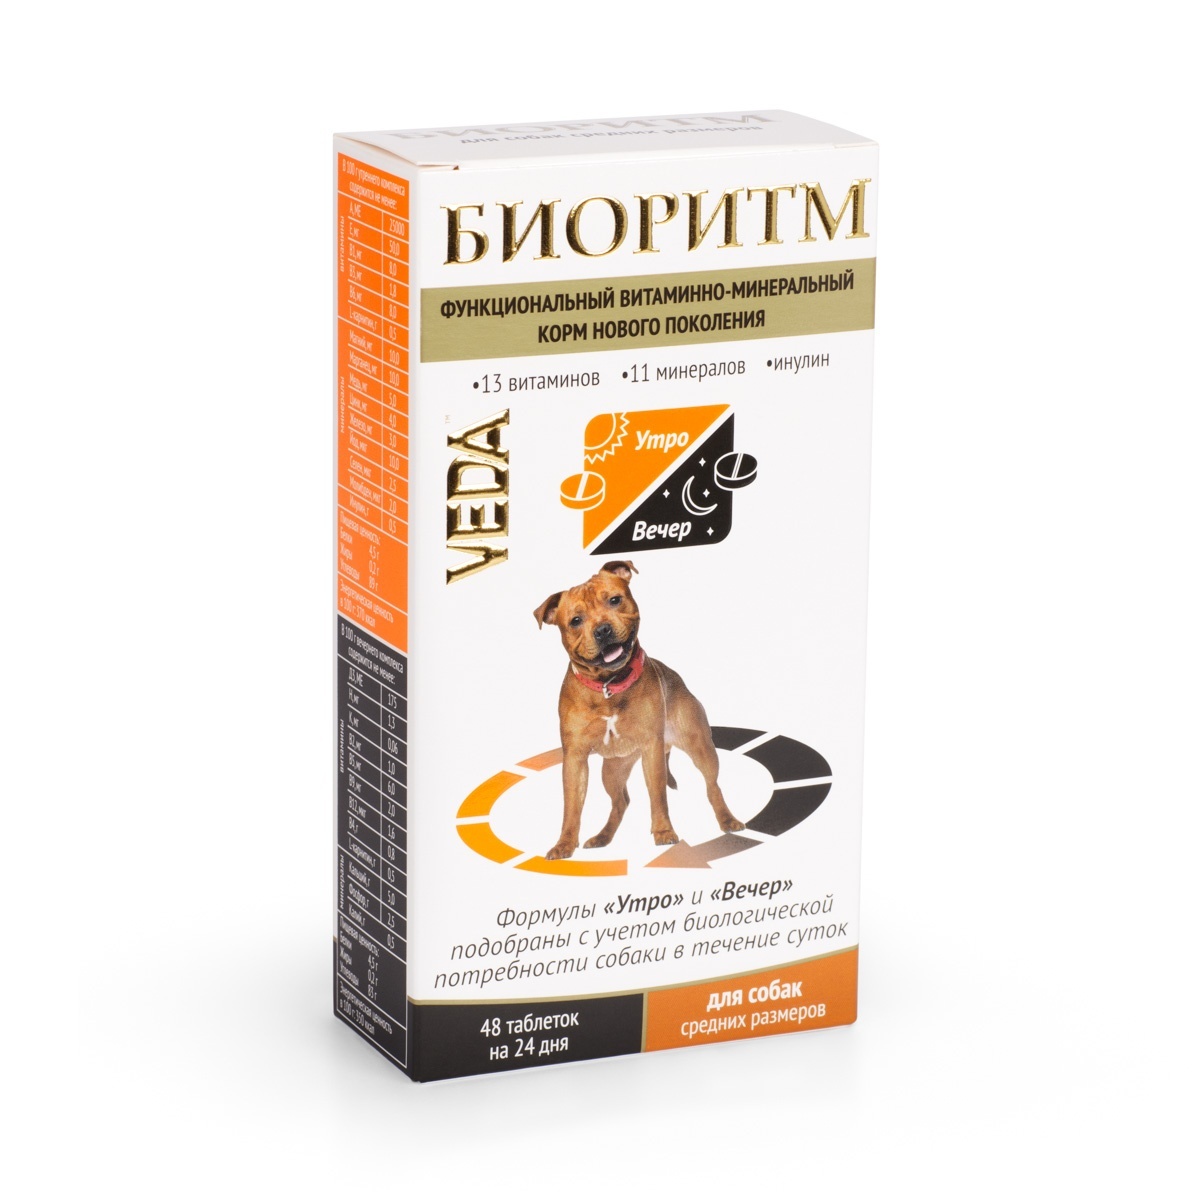 Веда Веда биоритм витамины для собак средних пород (20 г) веда веда шоколад темный для собак 45 г